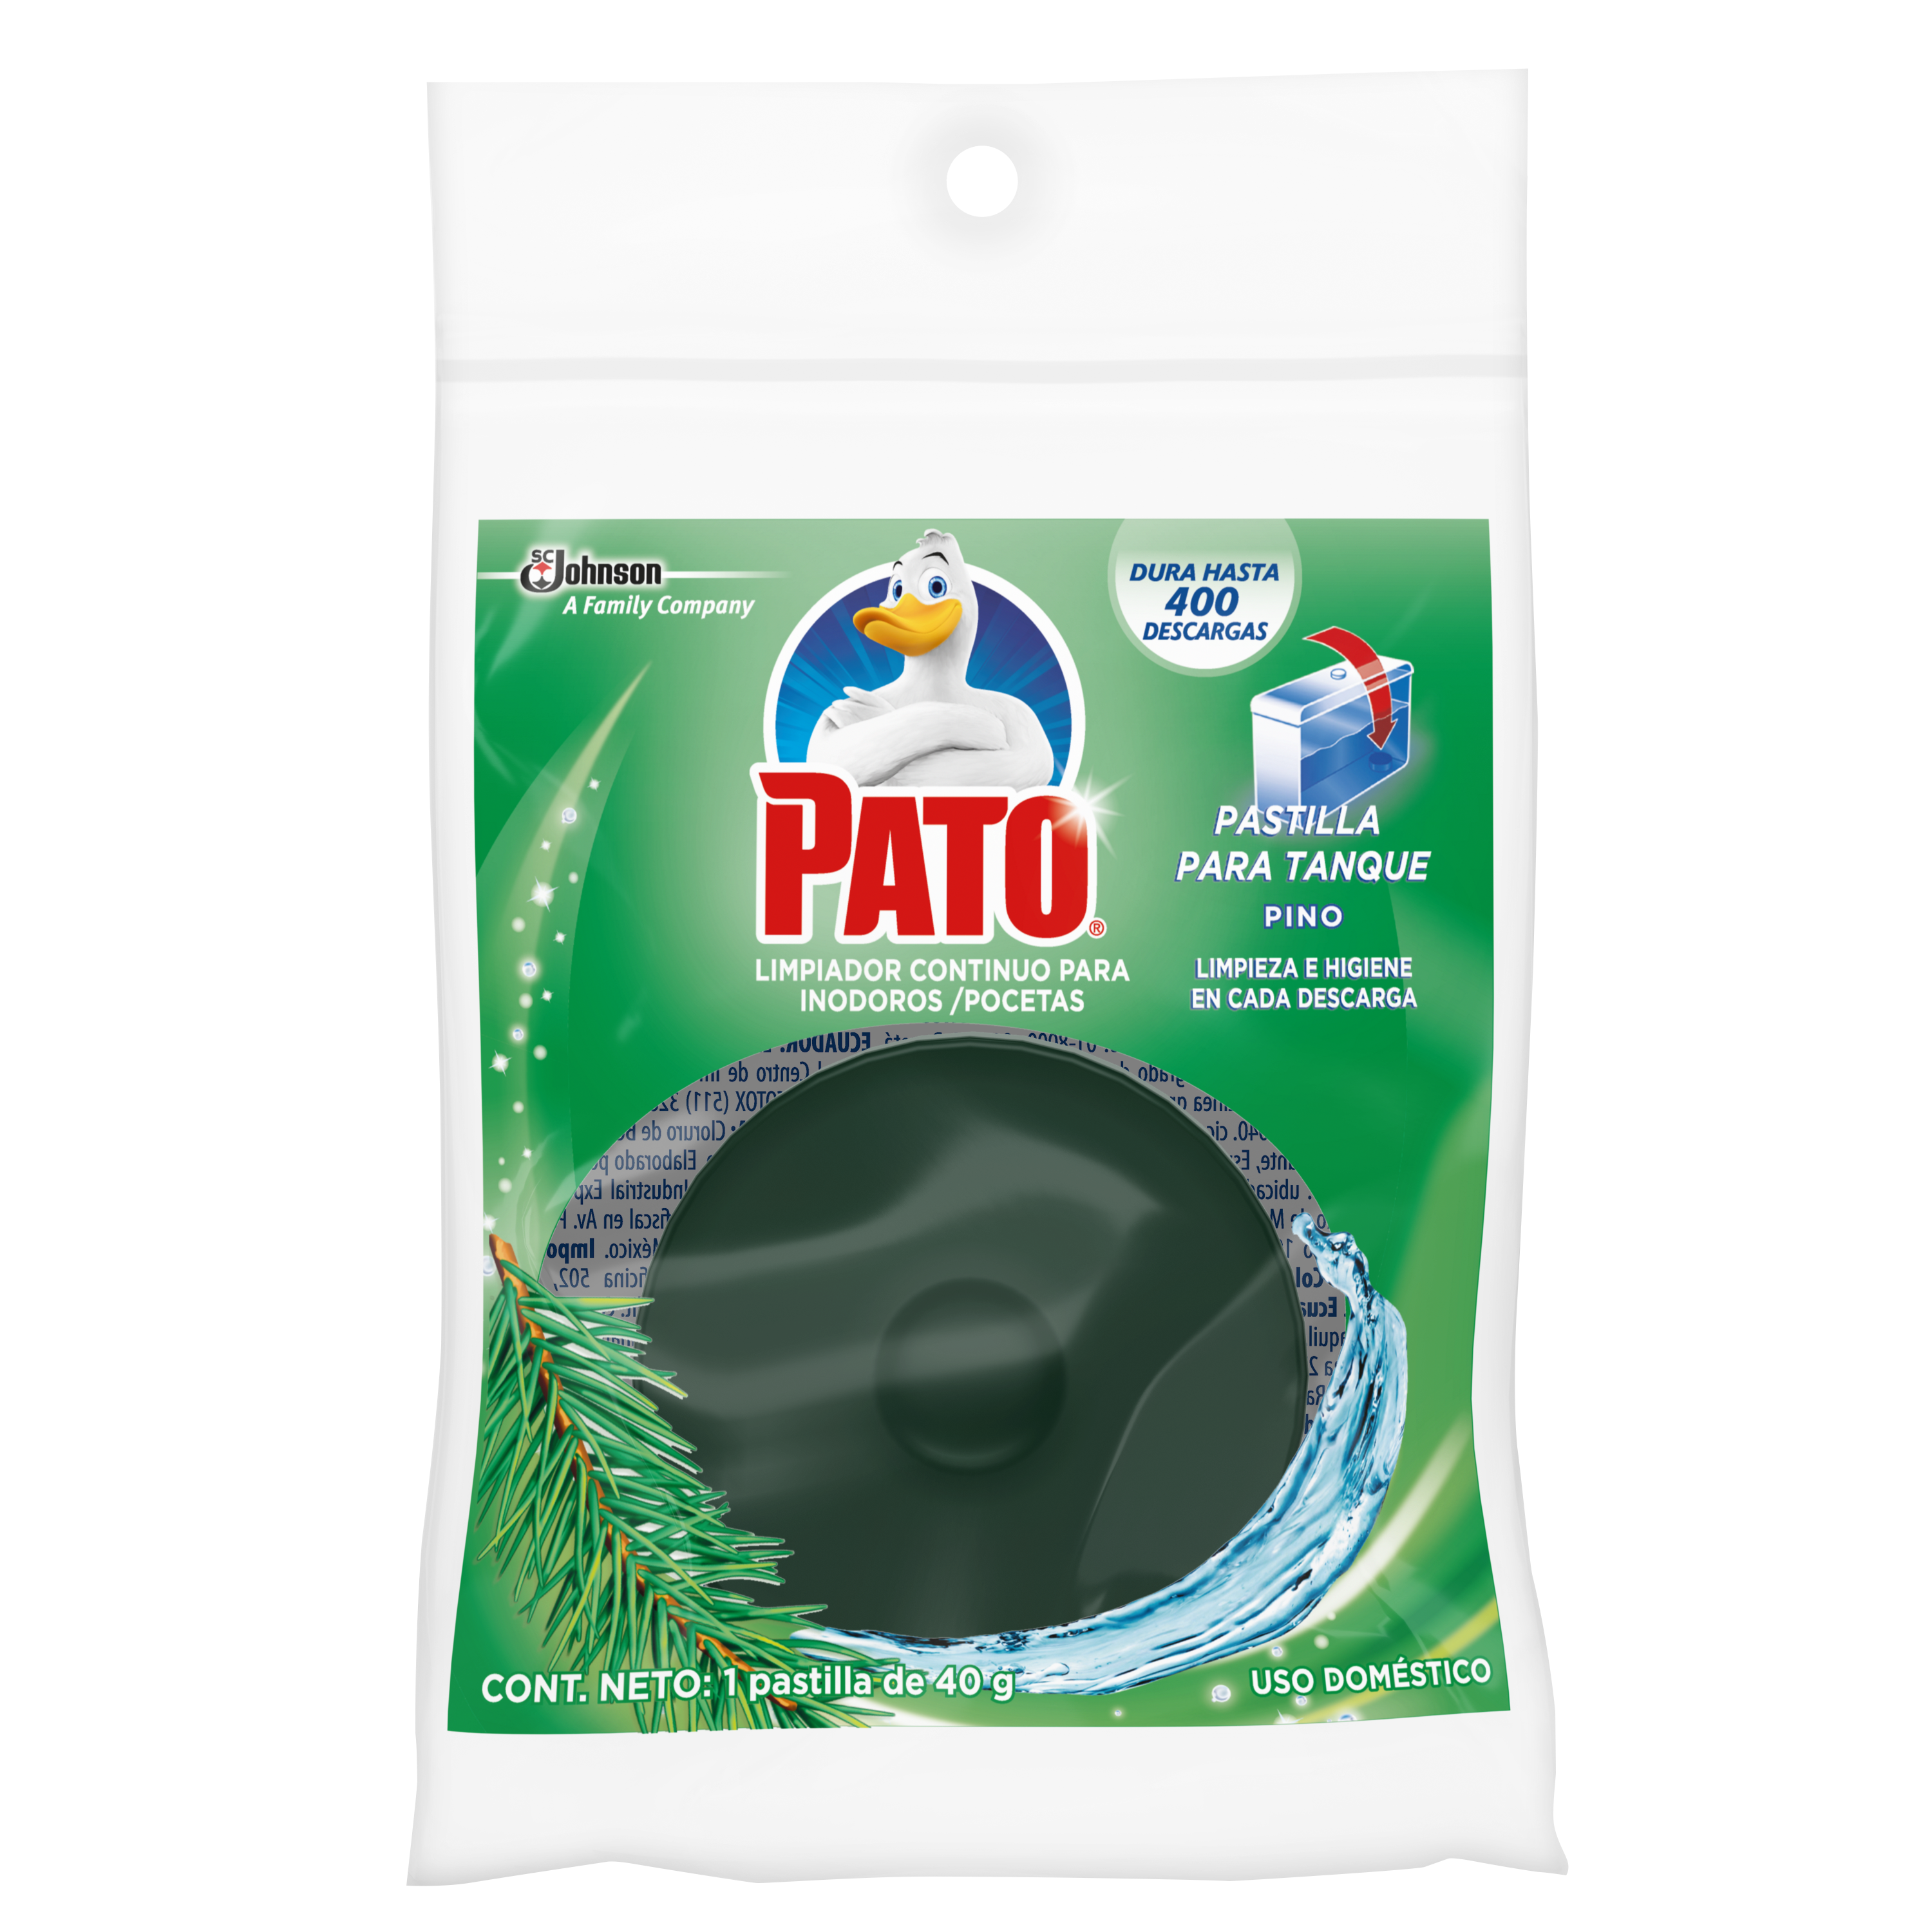 Pato® Pastilla Tanque Pino